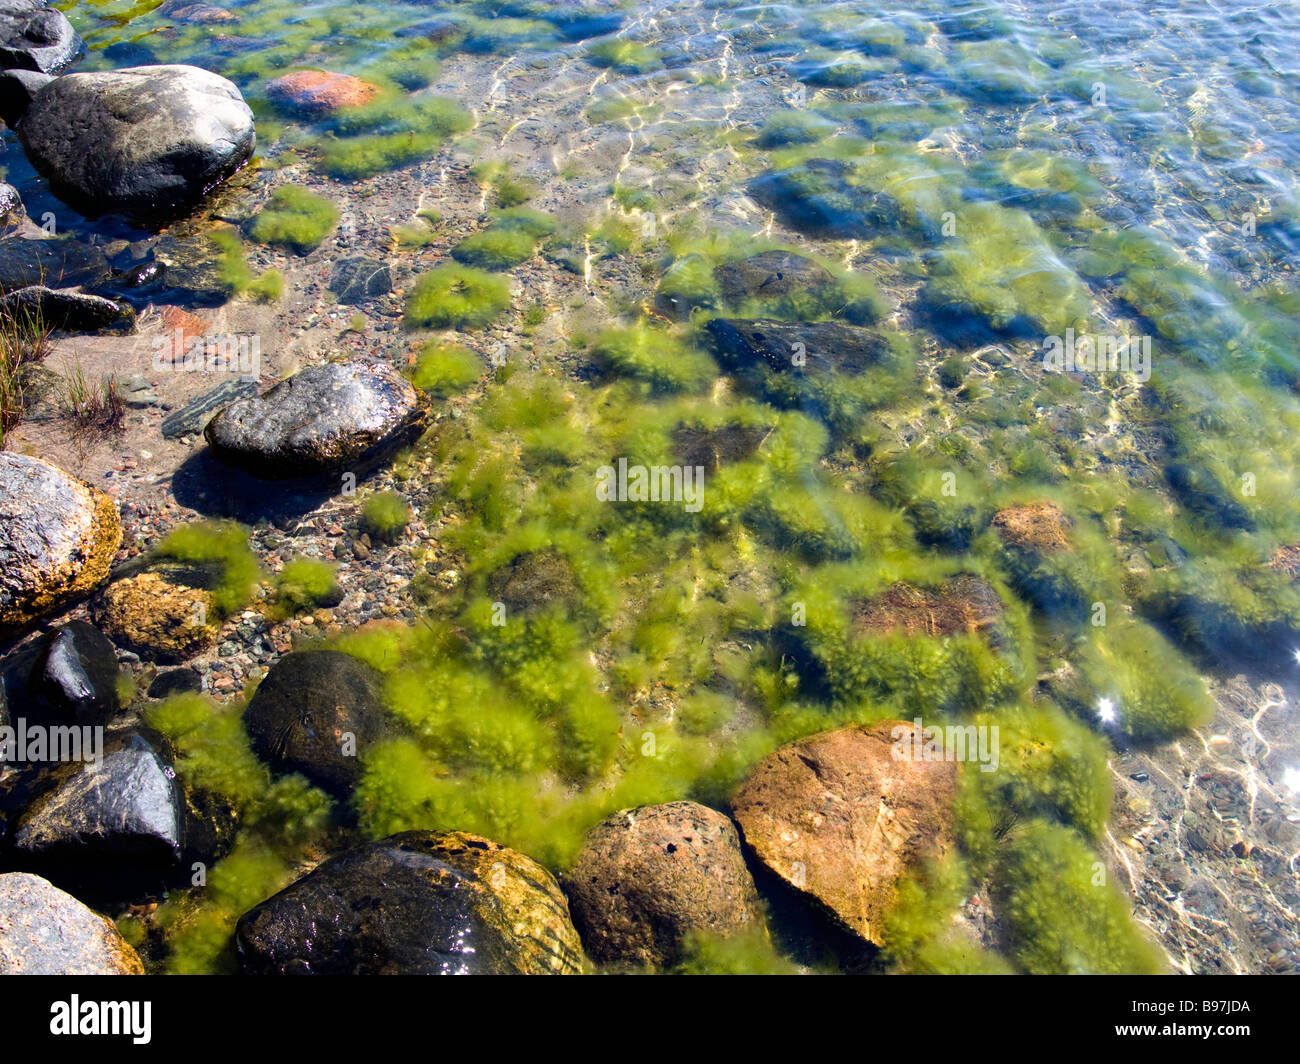 Algae in the sea near the shore. Stock Photo